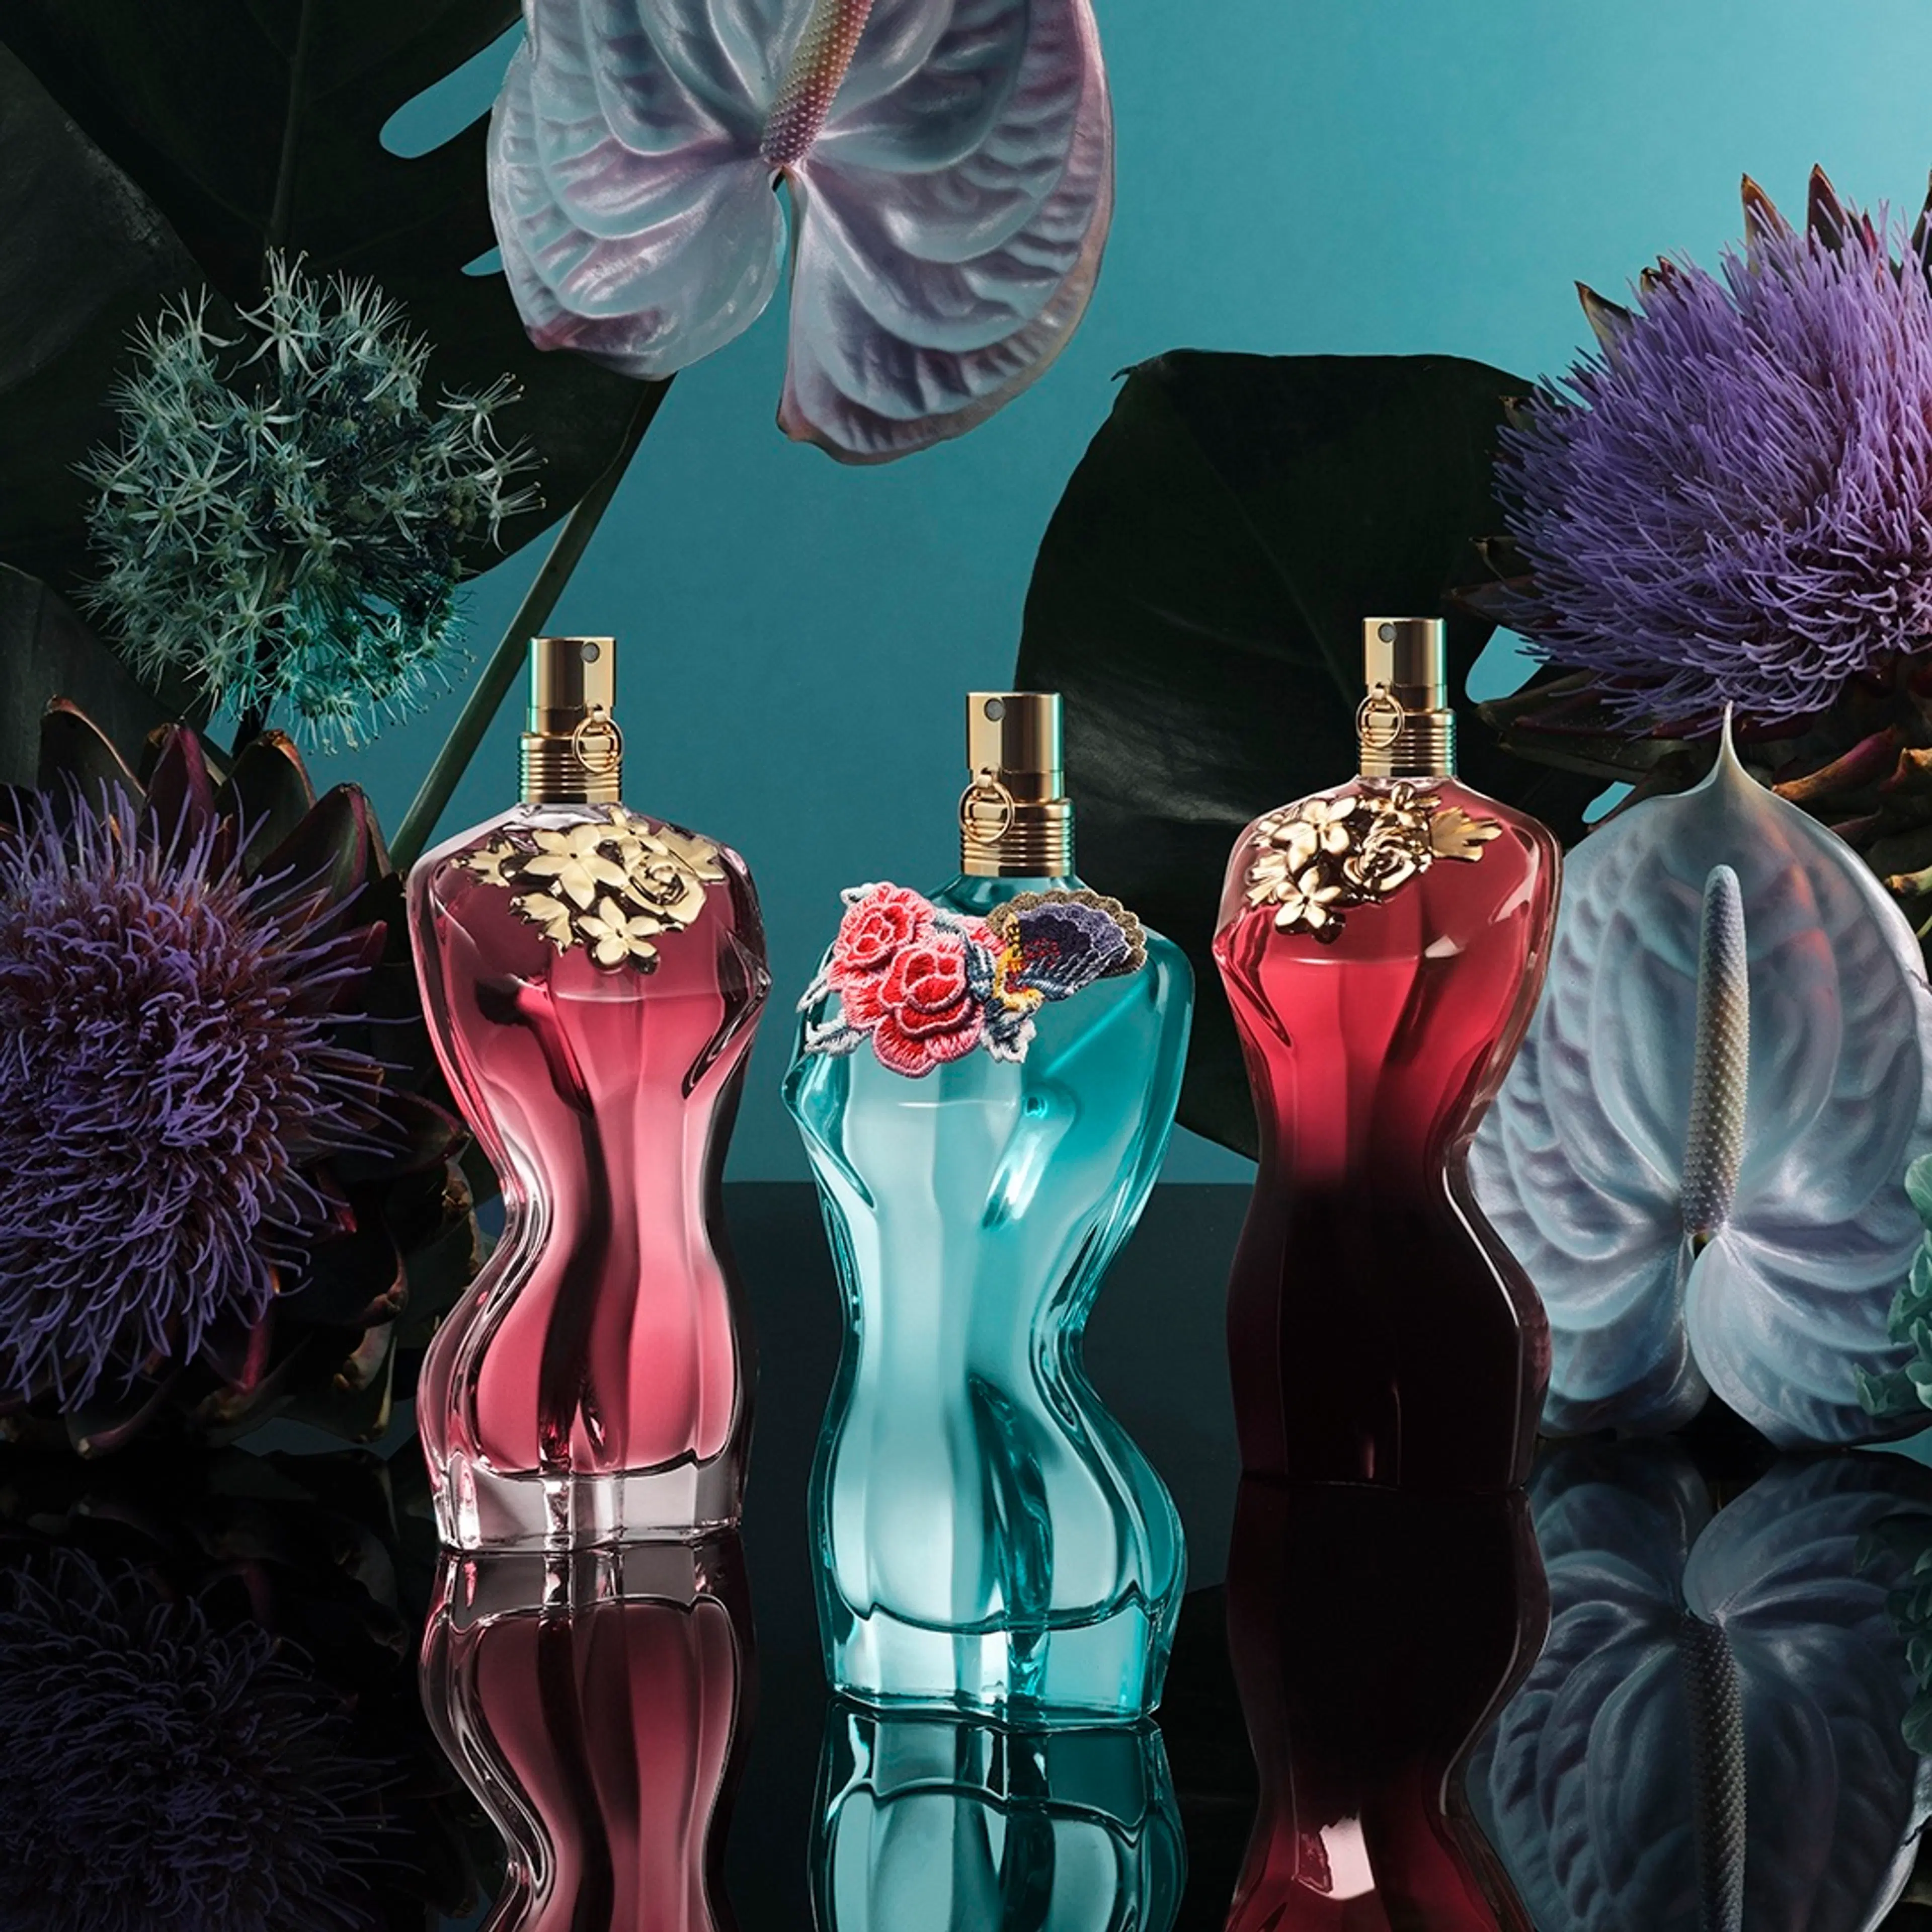 Jean Paul Gaultier La Belle Le Parfum EdP tuoksu 30 ml